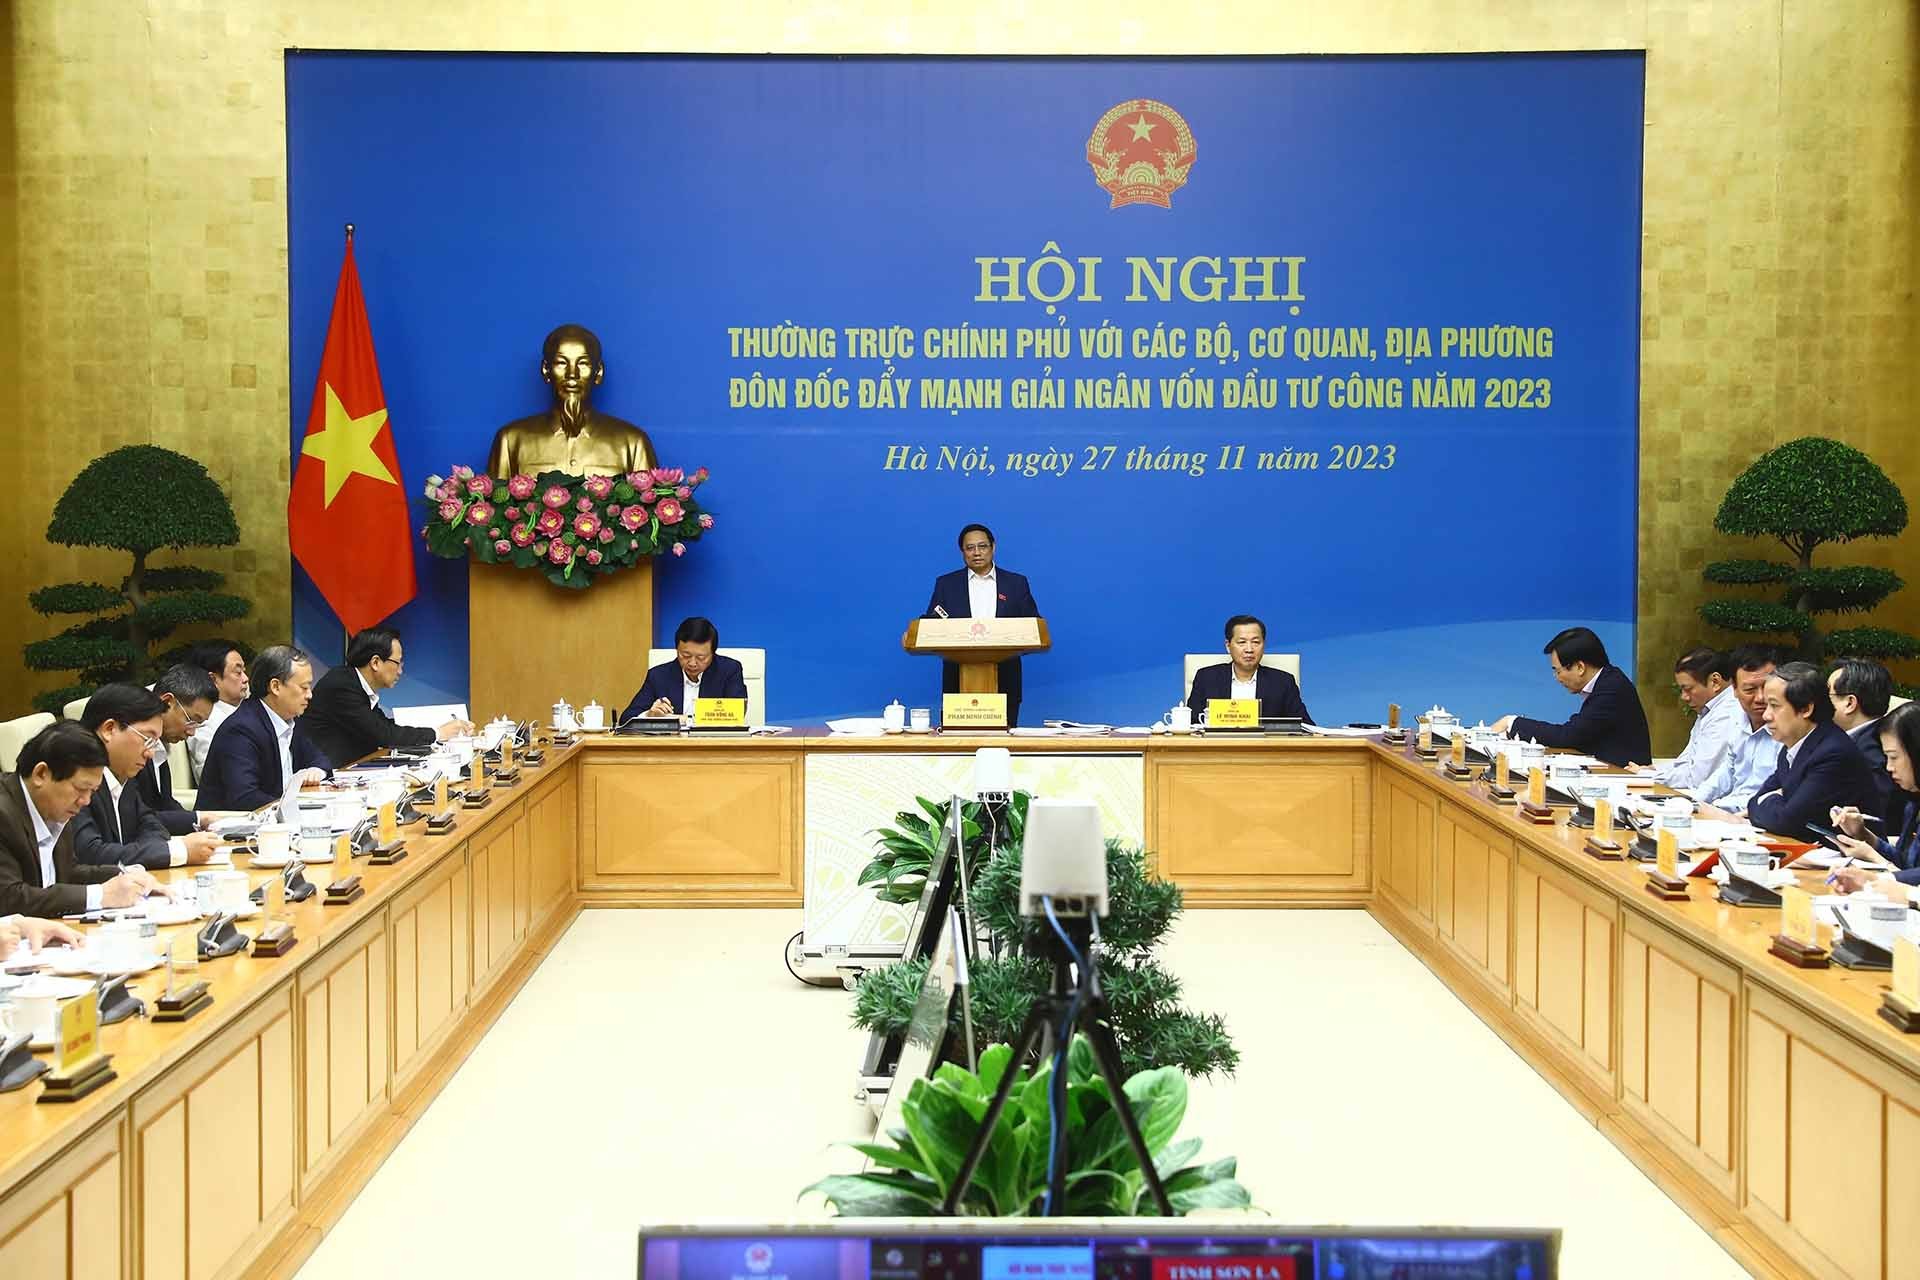 Thủ tướng Phạm Minh Chính chủ trì cuộc họp của Thường trực Chính phủ trực tuyến với các Bộ, ngành, tỉnh, thành phố để đôn đốc đẩy mạnh giải ngân vốn đầu tư công năm 2023. (Nguồn: TTXVN)